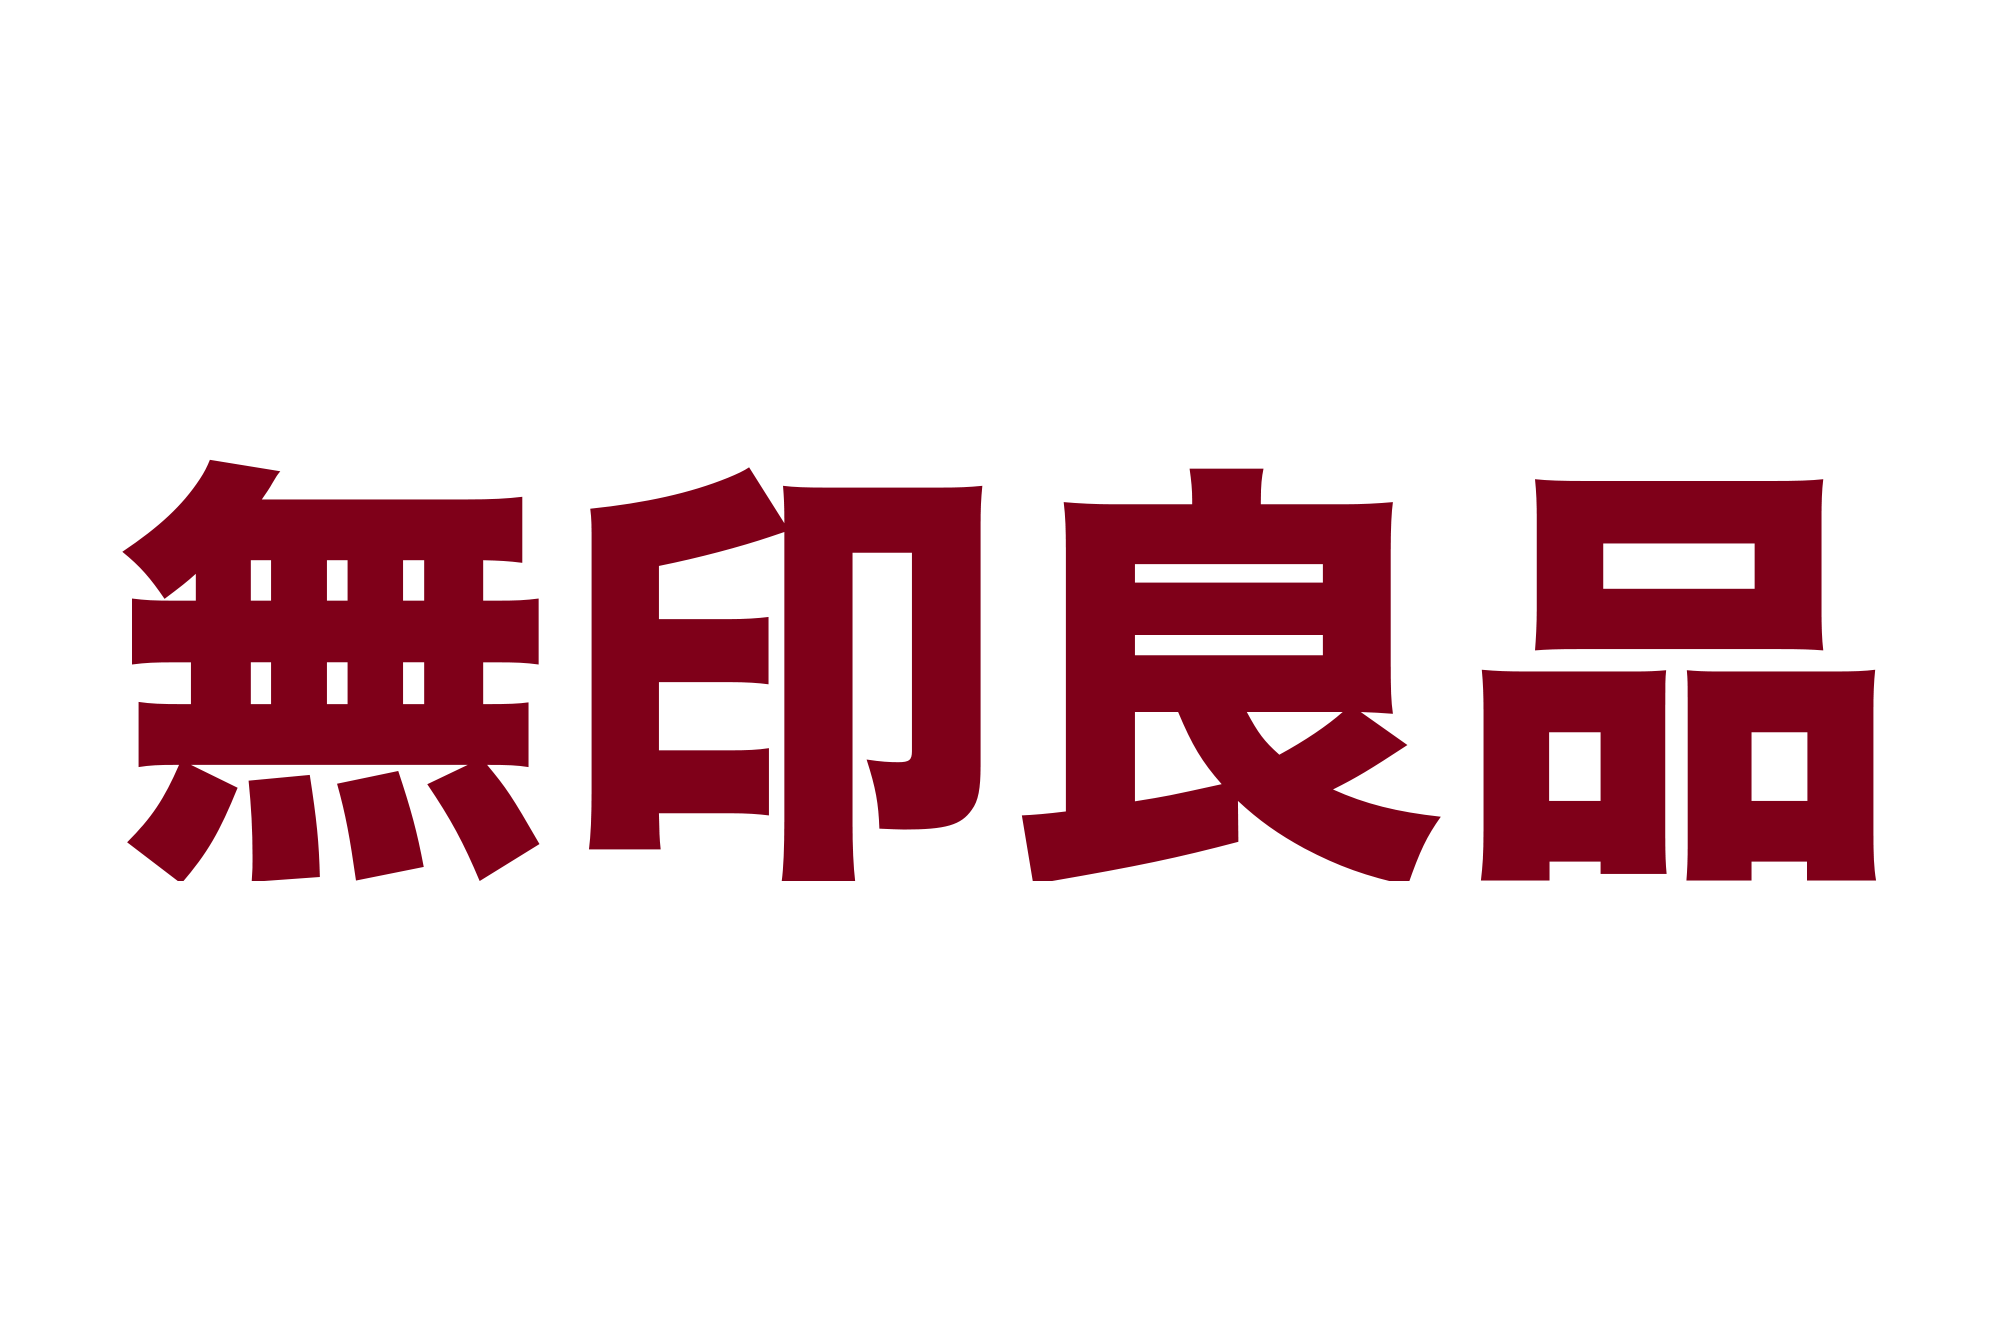 Japanese Brand Logo - Muji logo | Logok